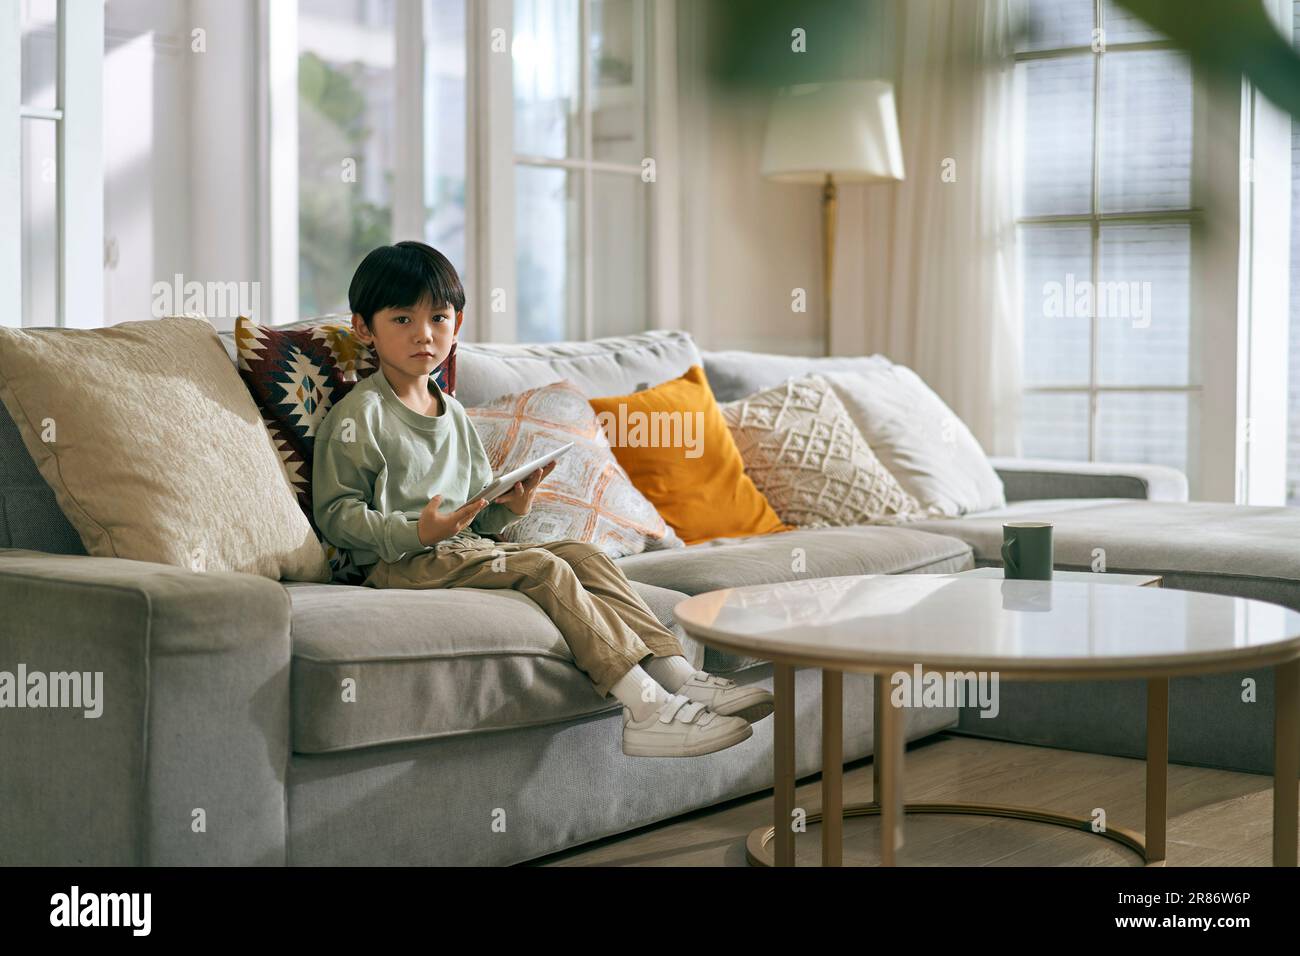 Kleiner asiatischer Junge, der auf der Familientischcouch sitzt, im Wohnzimmer und in die Kamera schaut Stockfoto